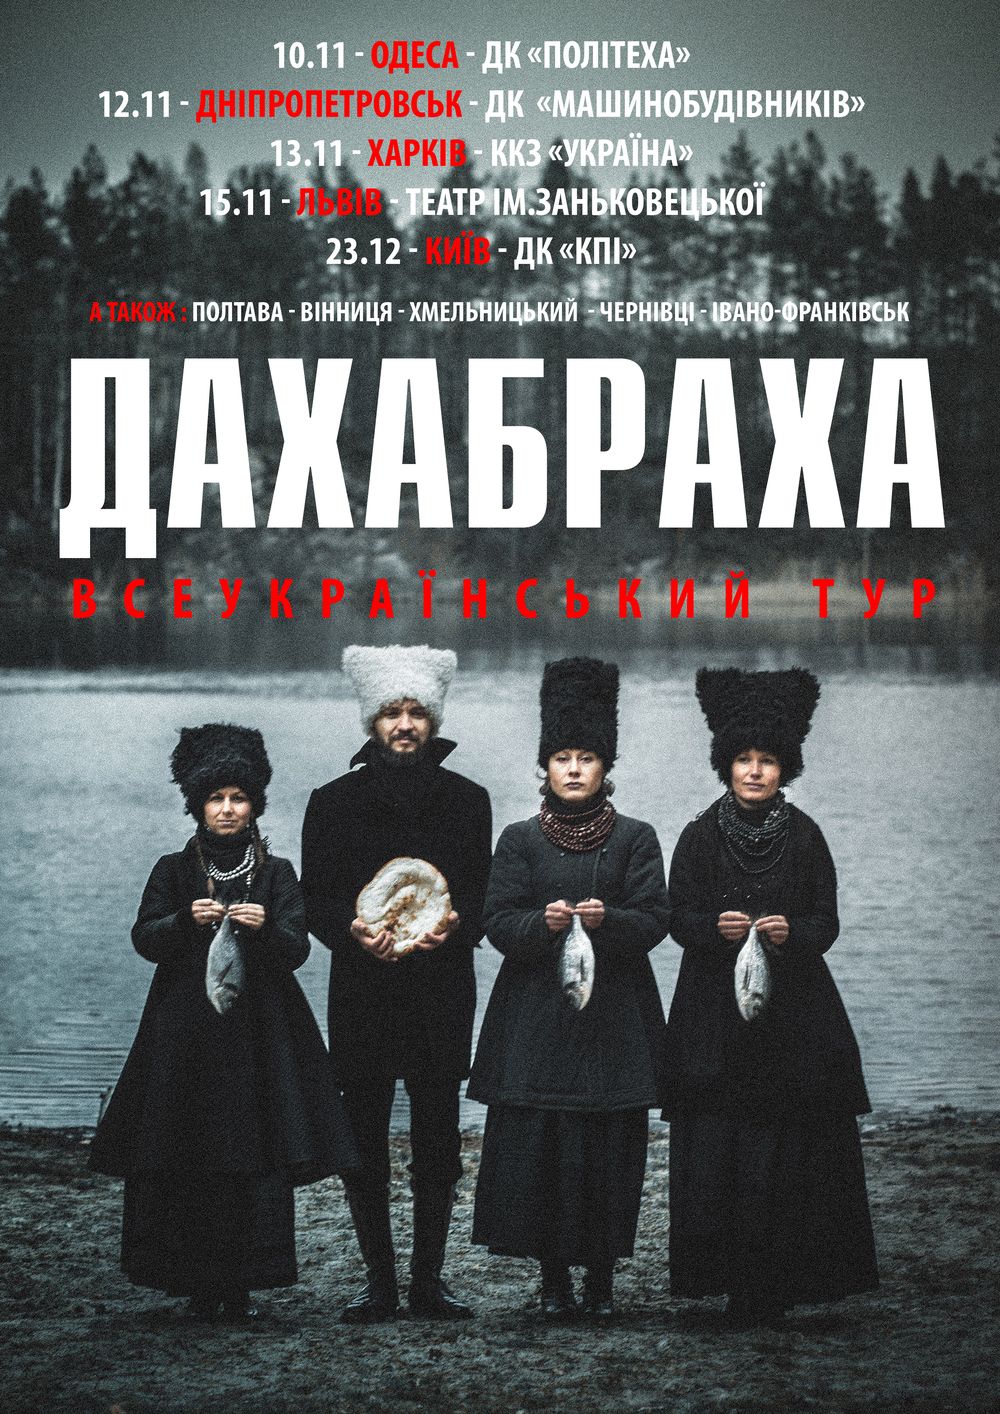 ДахаБраха отправляется в концертный тур по Украине